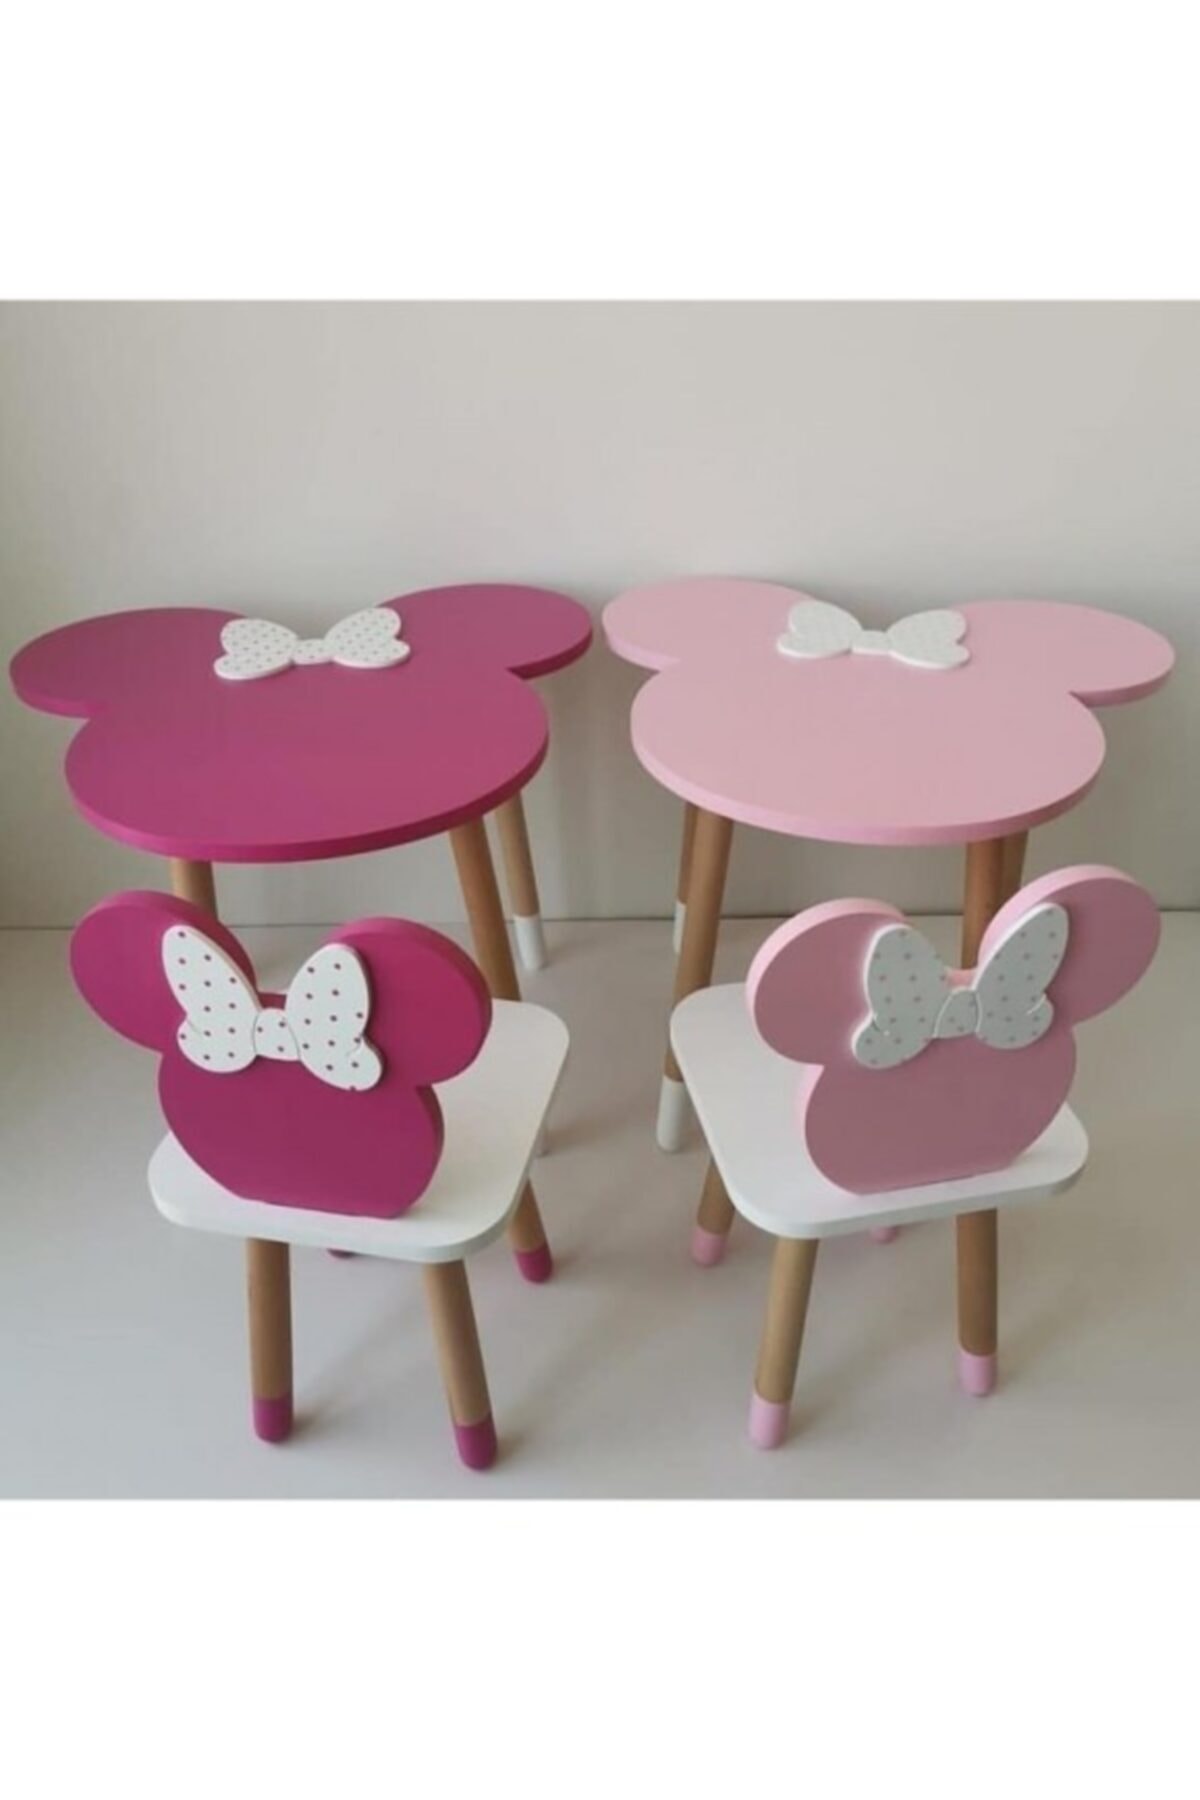 NİNNOLA Minnie Mouse Çalışma Masası Ve Sandalye - Pudra Rengi